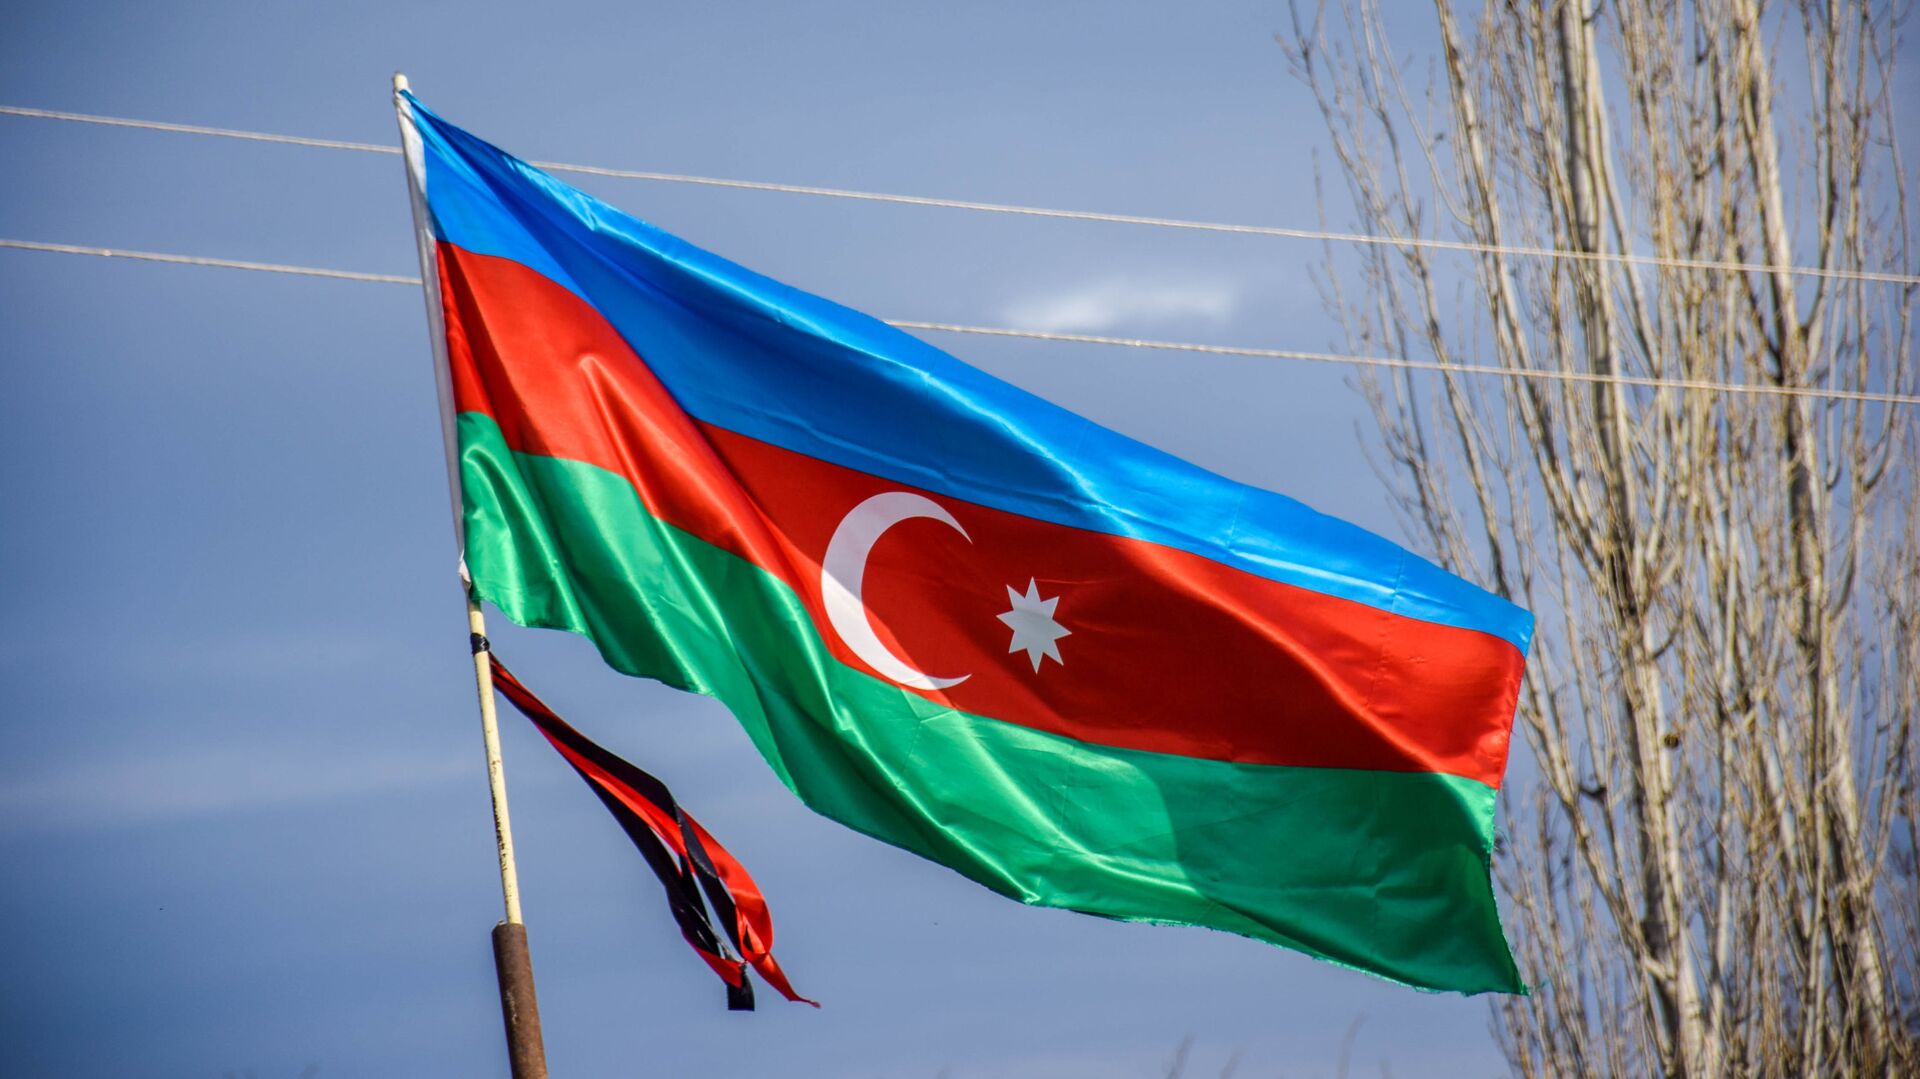 Azərbaycan bayrağı - Sputnik Азербайджан, 1920, 04.10.2021